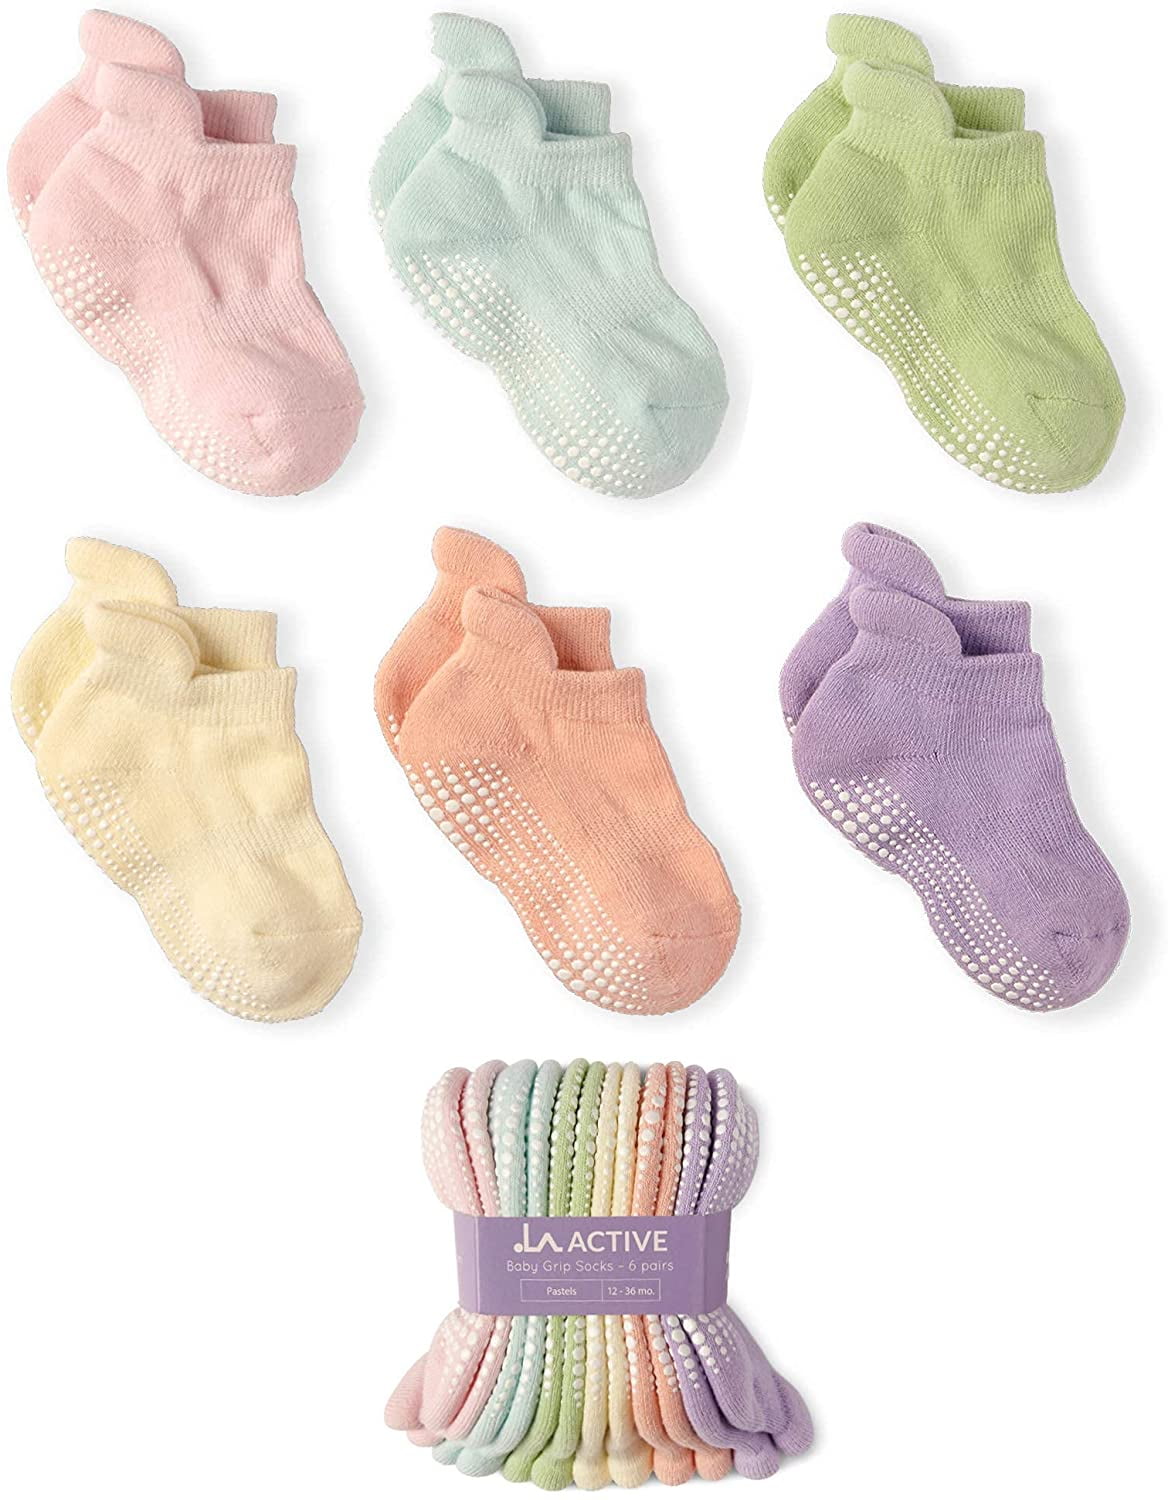 Baby Infant Toddler Kids Boys Girls Non Slip Anti Skid Ankle Socks with Grip 